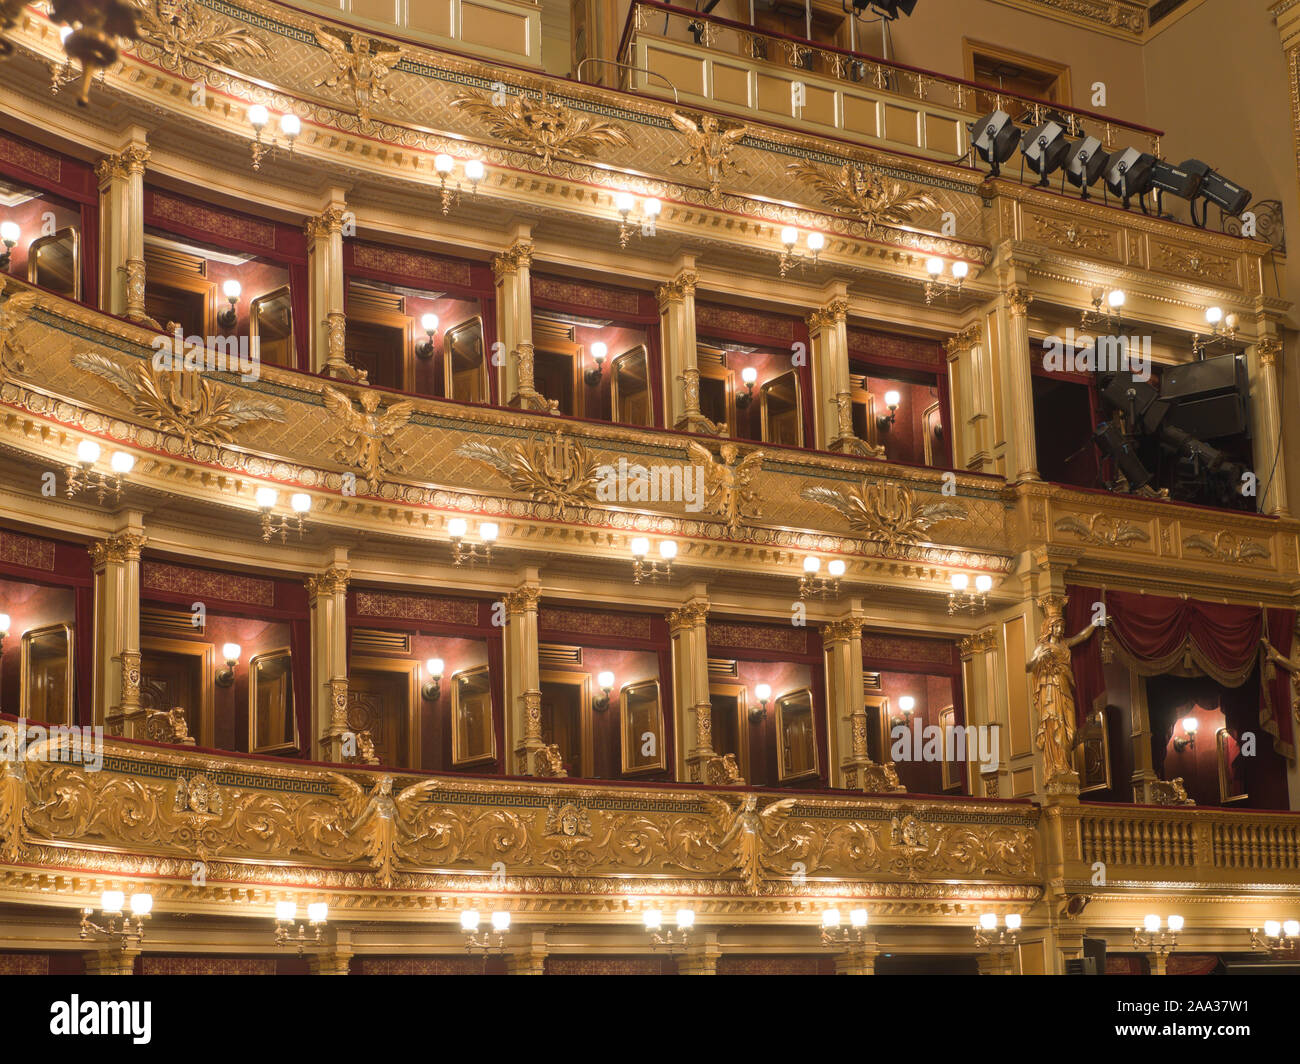 Interieur mit Gold, Beleuchtung und Dekoration in den Ställen Balkonen der Nationaltheater Národní divadlo, in der Hauptstadt Prag, Tschechische Republik Stockfoto